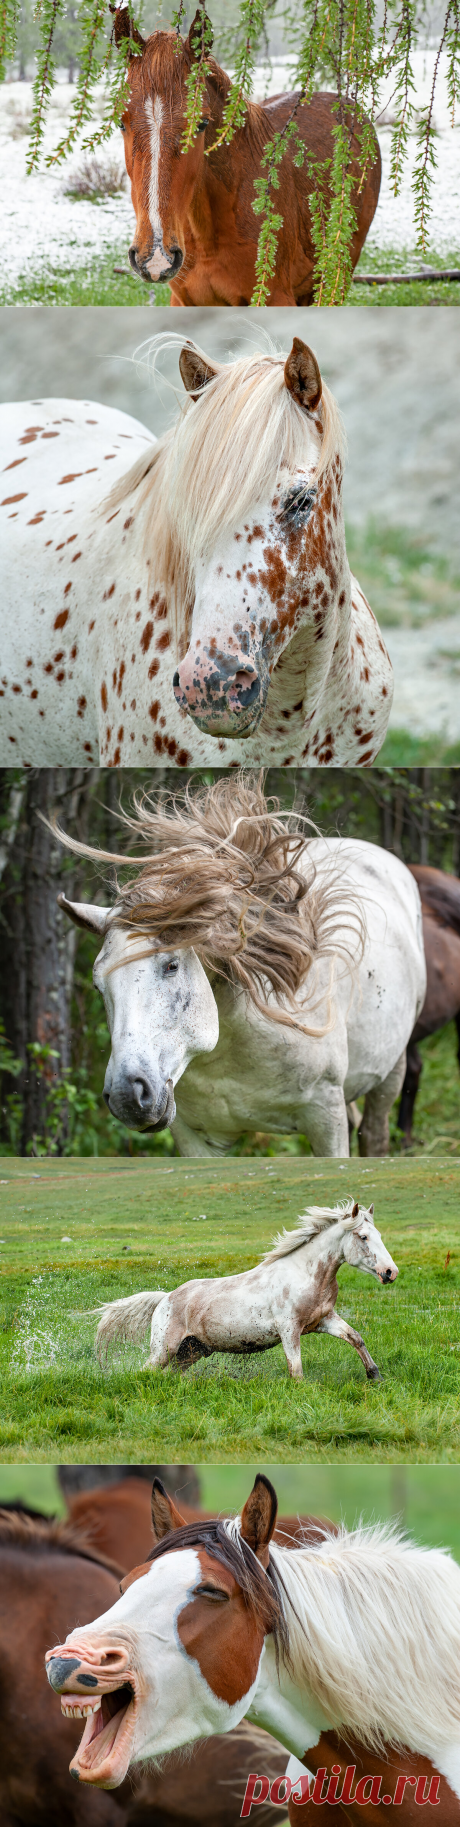 Лошади в профиль и анфас. 15 ярких портретов, отражающих характер лошади | Фотопутешествия | Яндекс Дзен